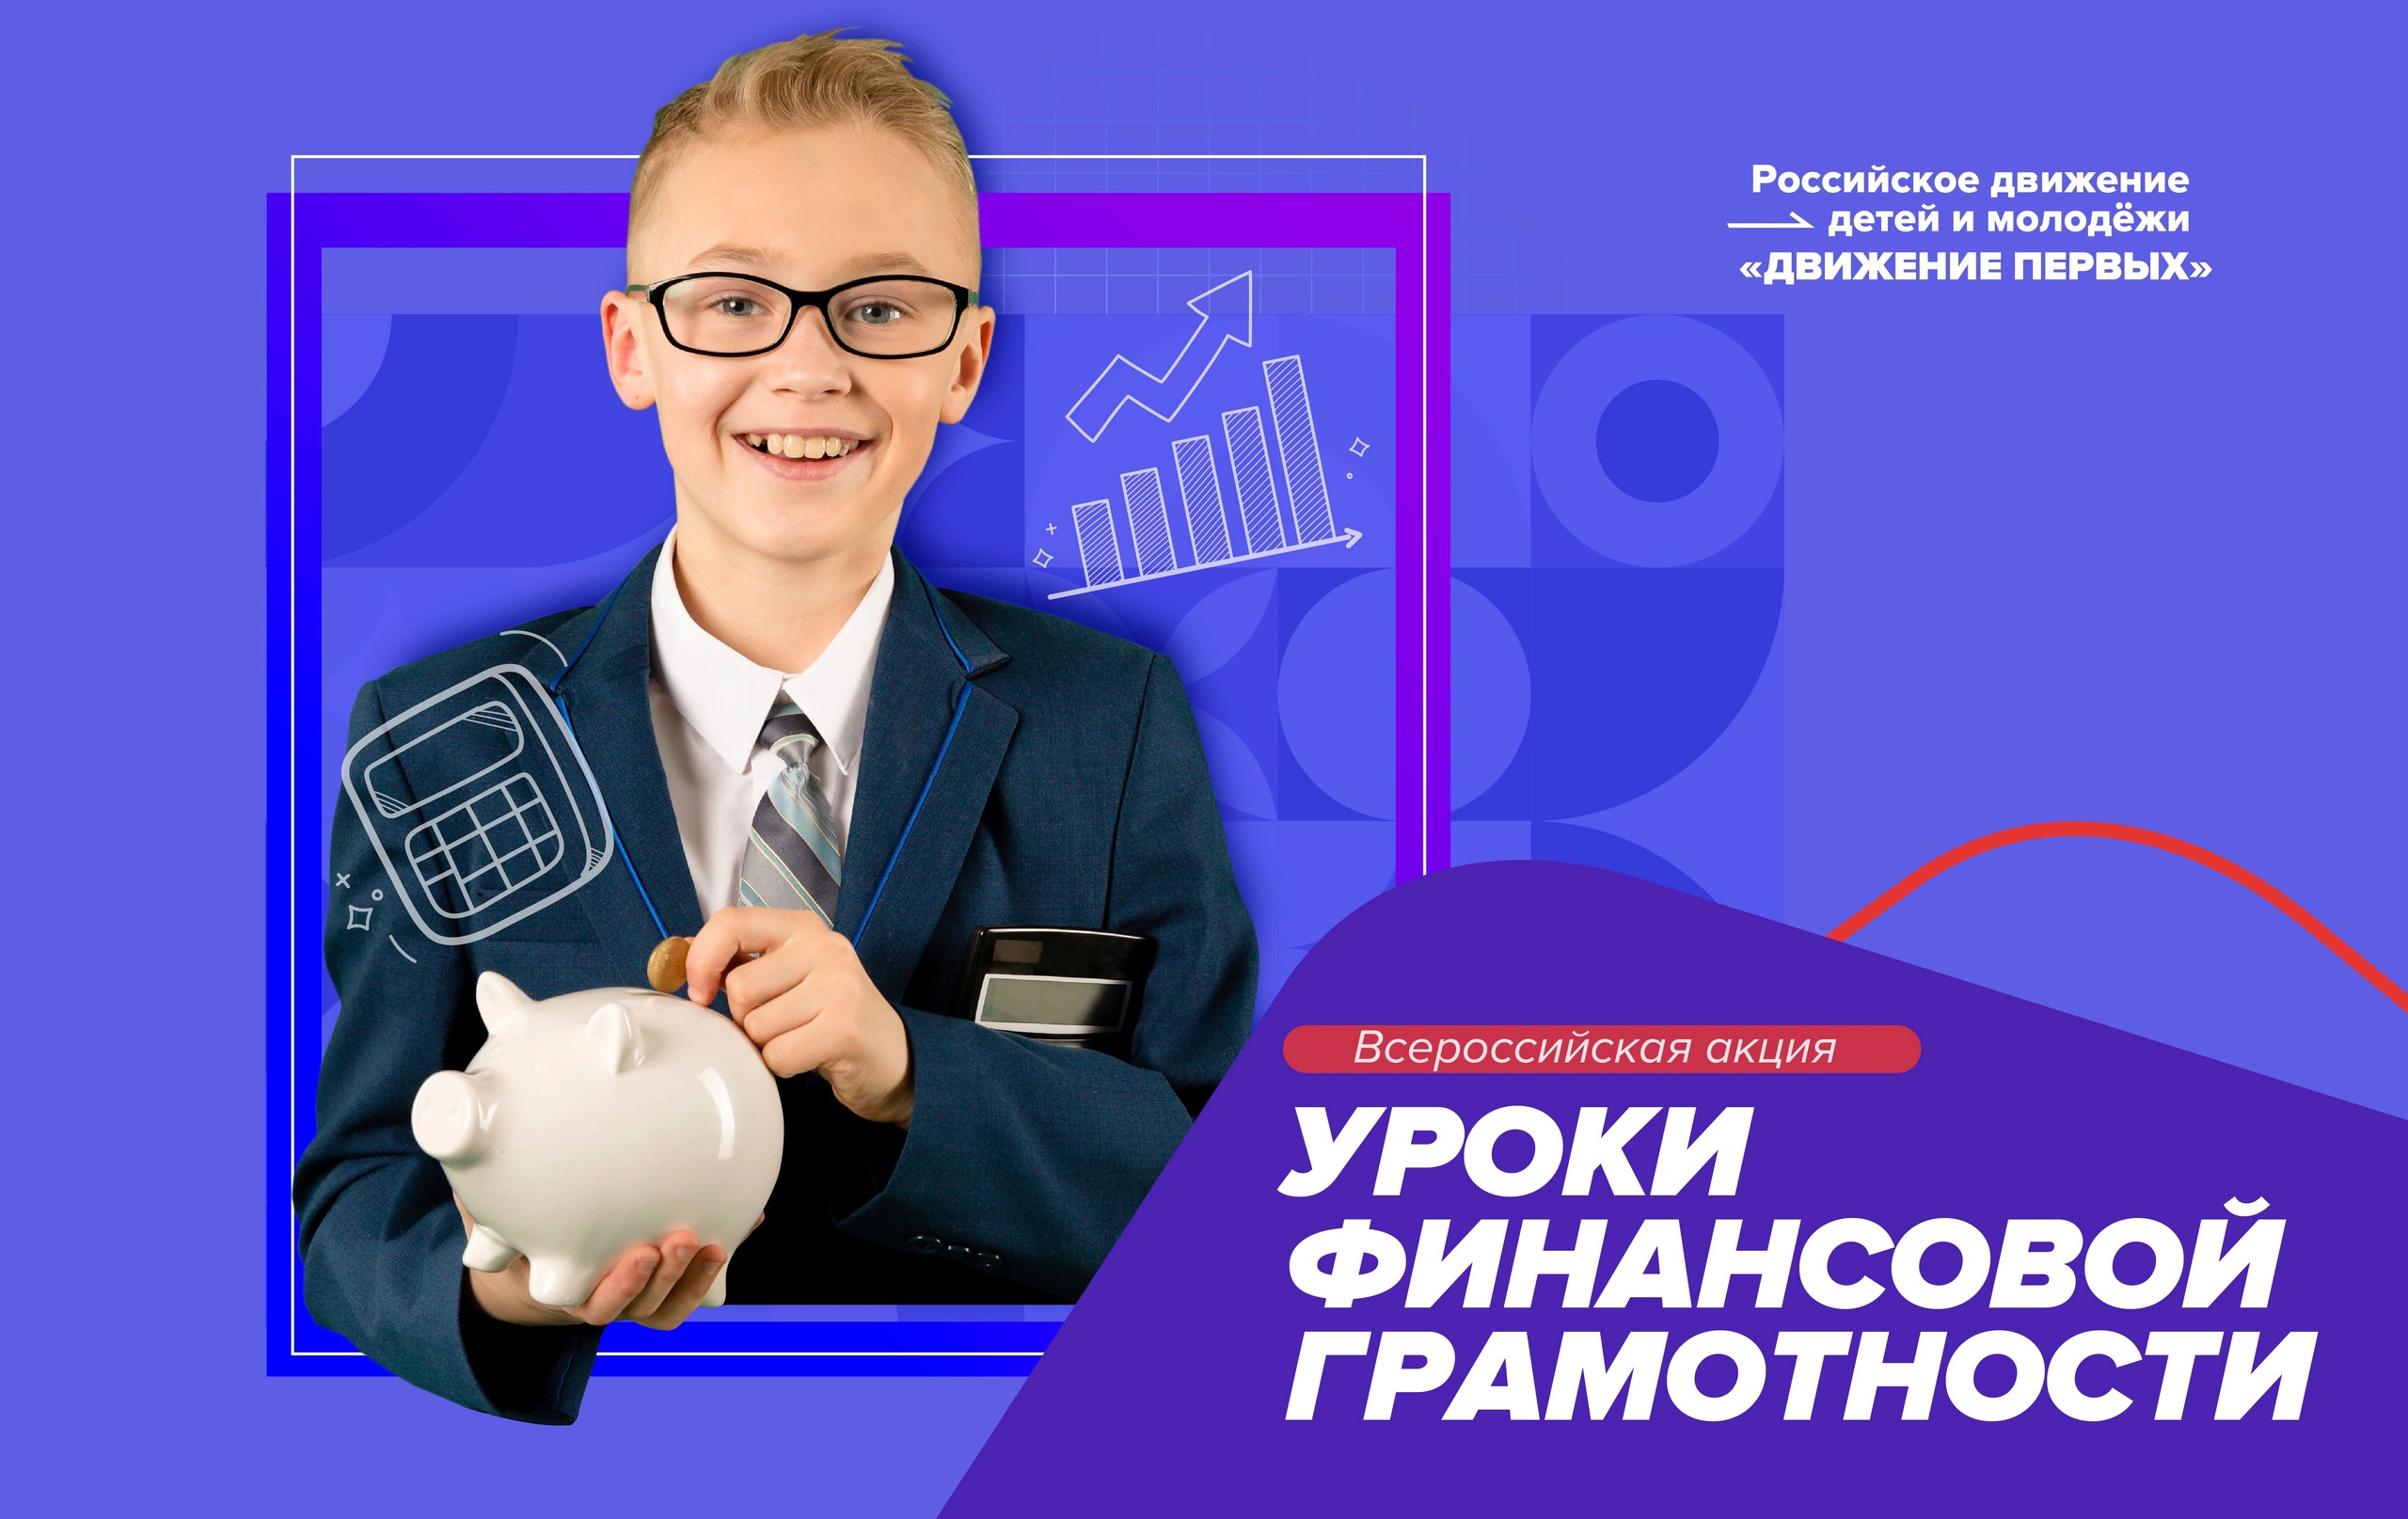 Всероссийская акция «Уроки финансовой грамотности»,  20 марта - 24 марта 2023 года!.